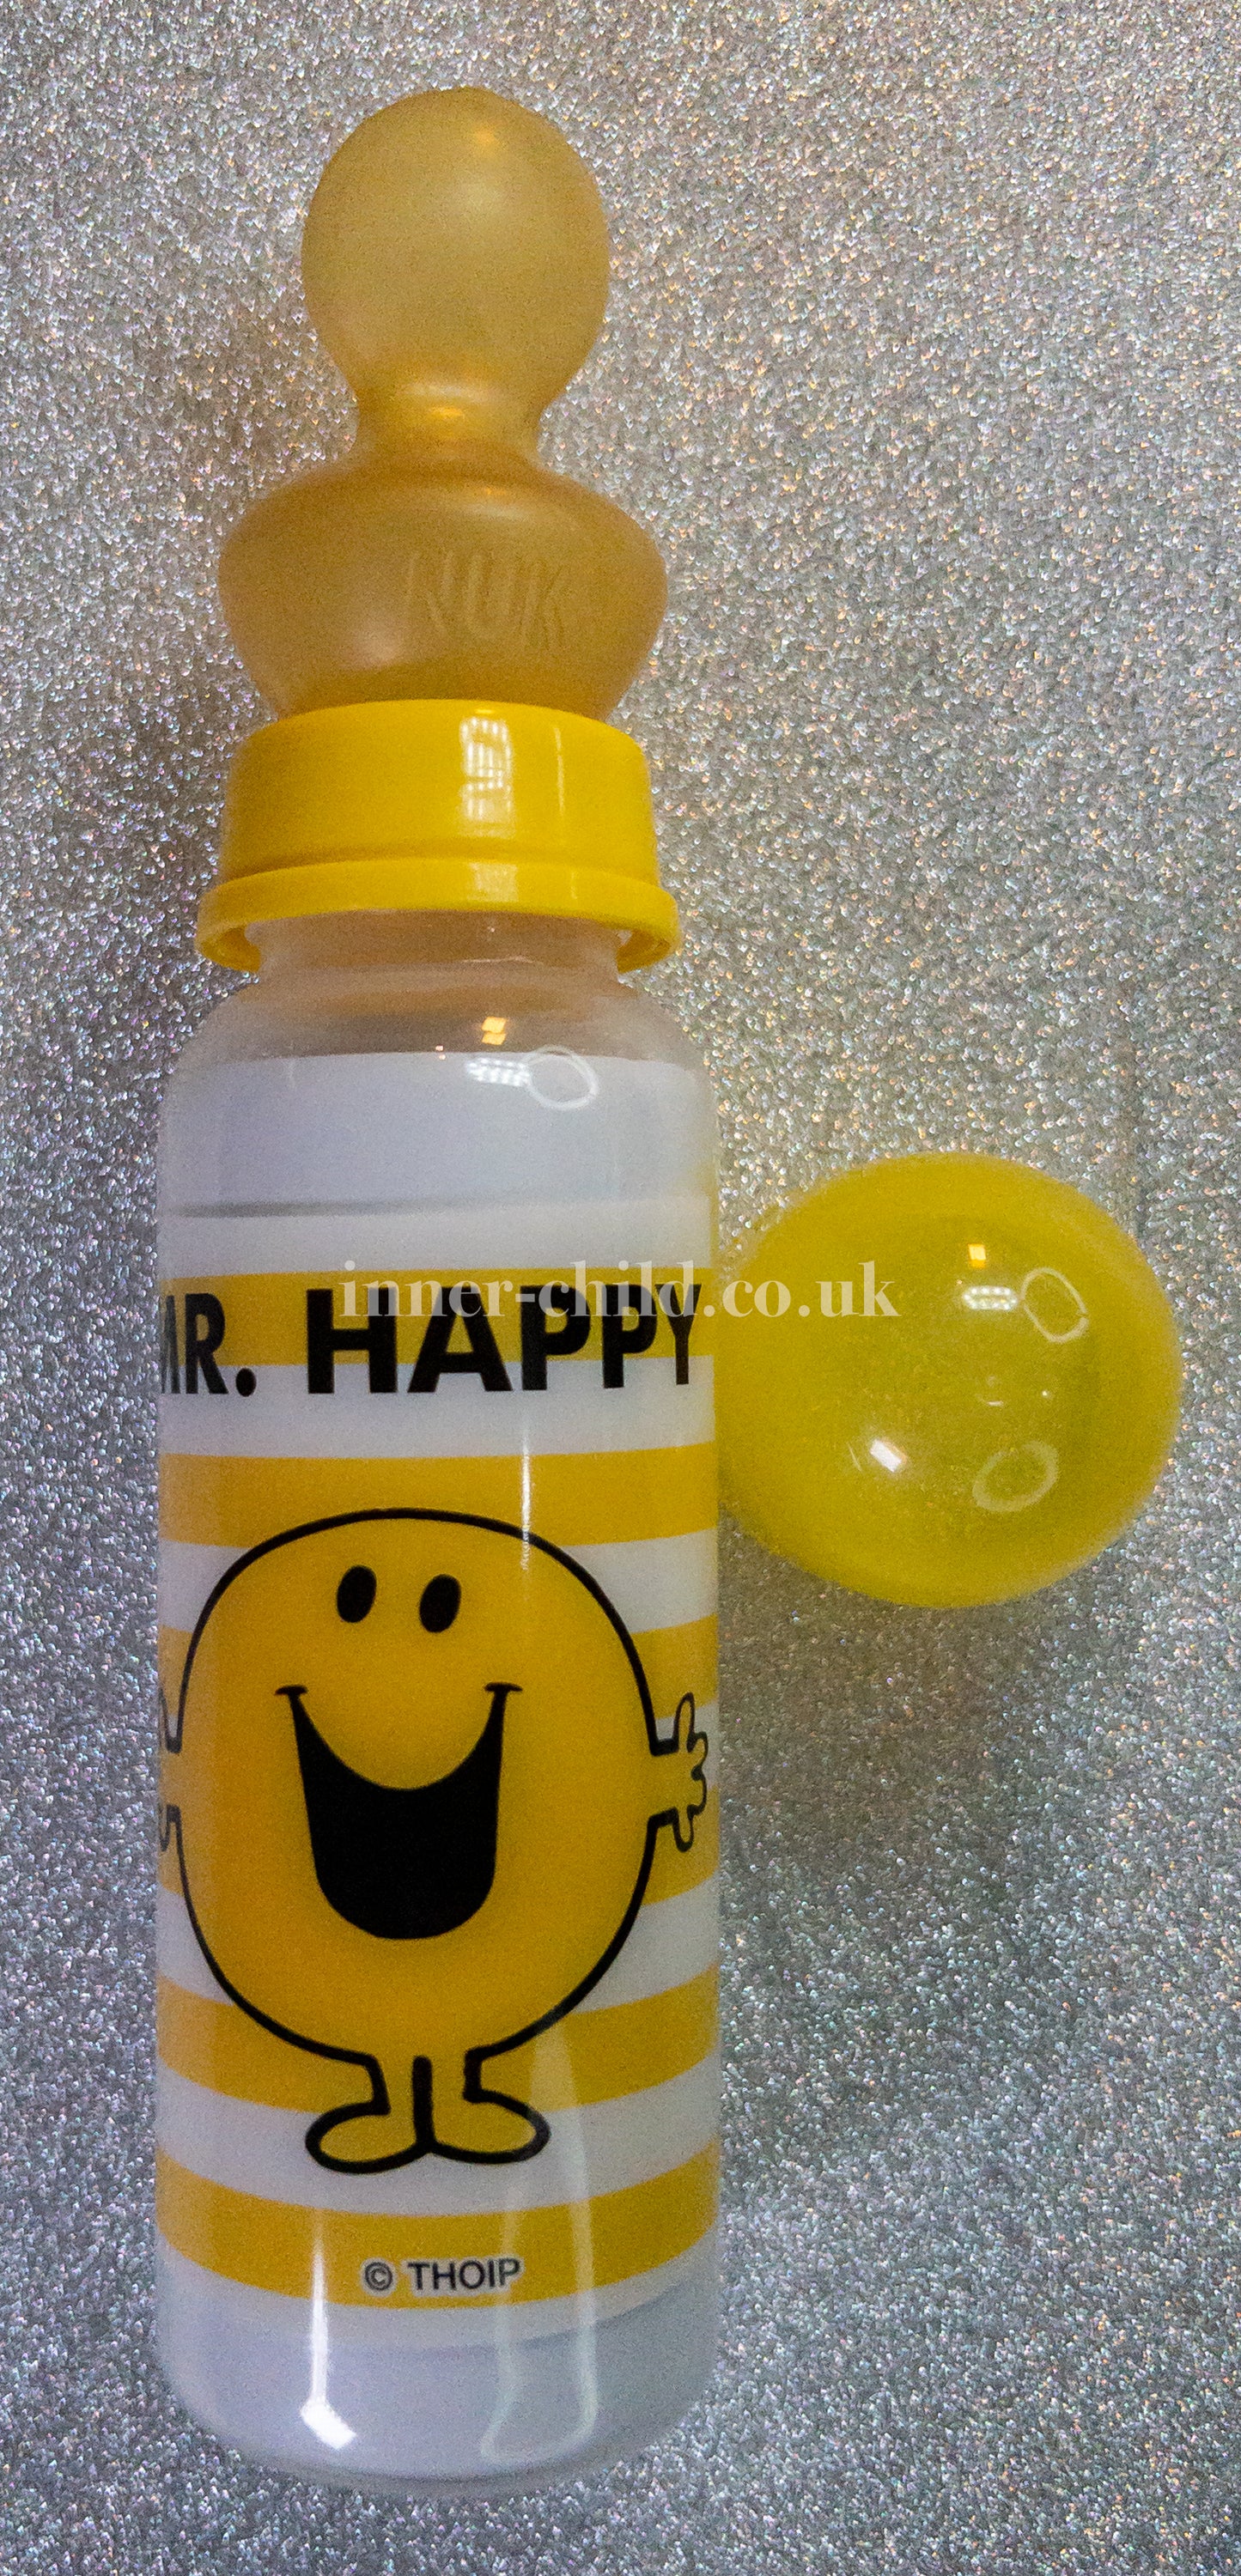 Mr Happy bottle